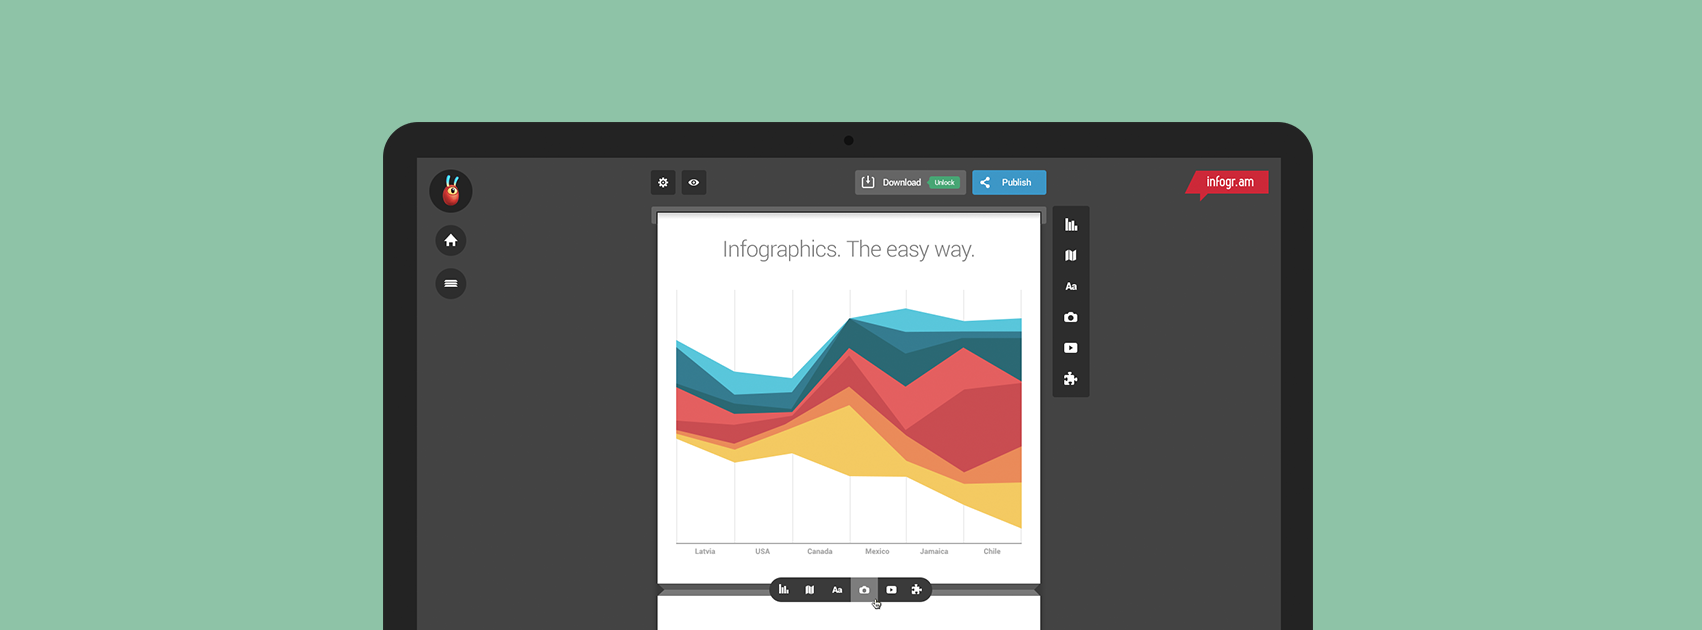 4 herramientas para crear infografías